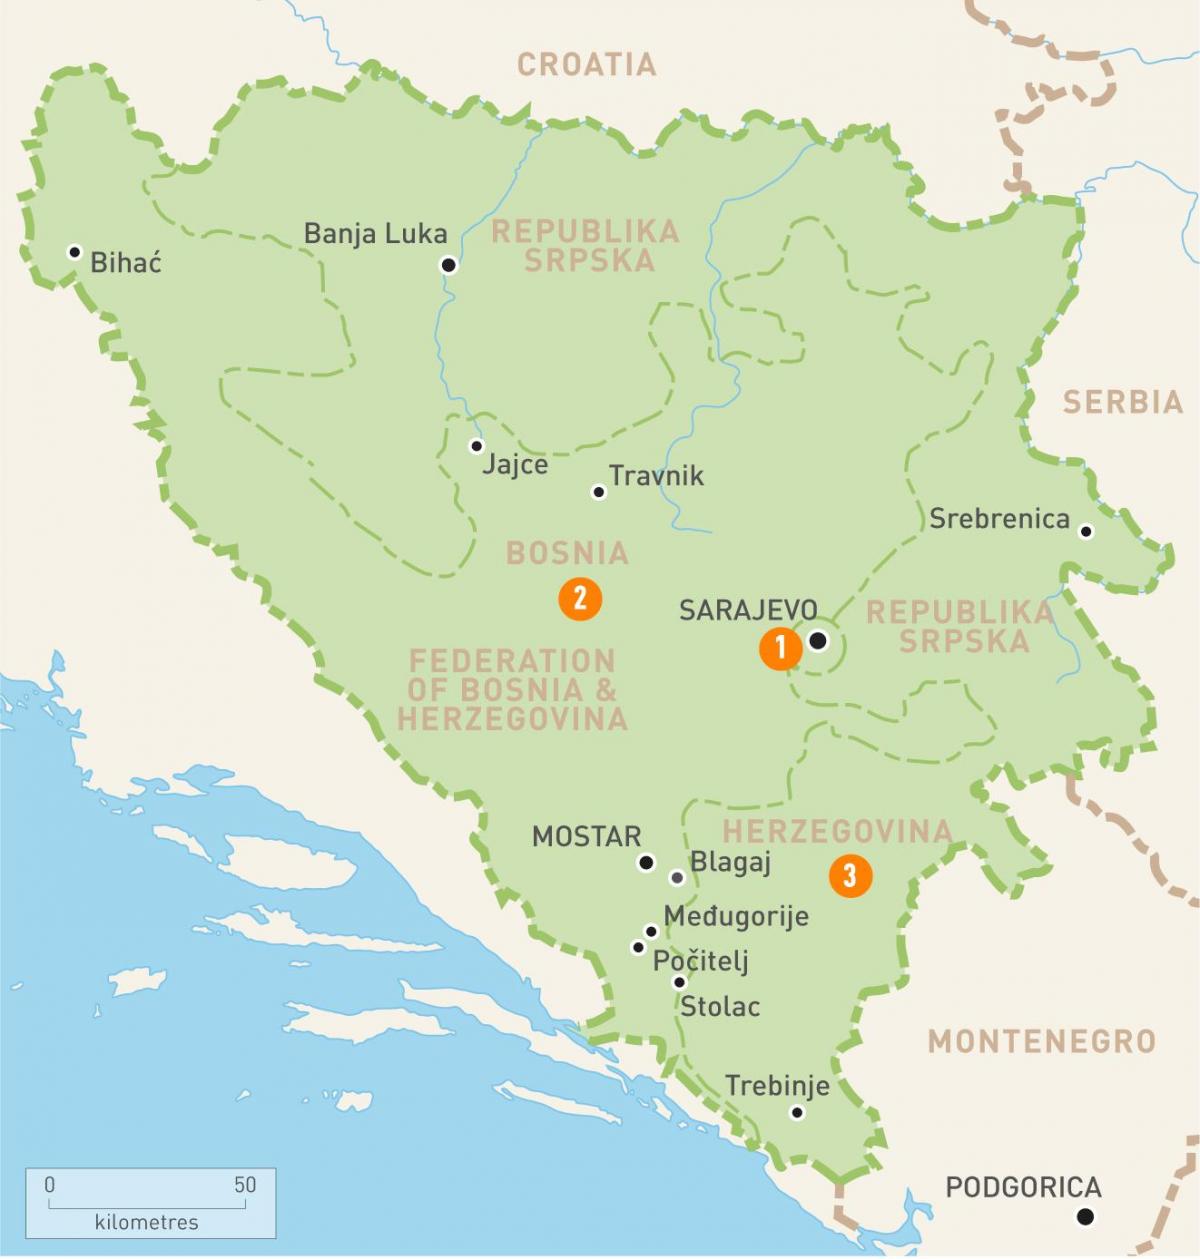 Térkép szarajevó Bosznia